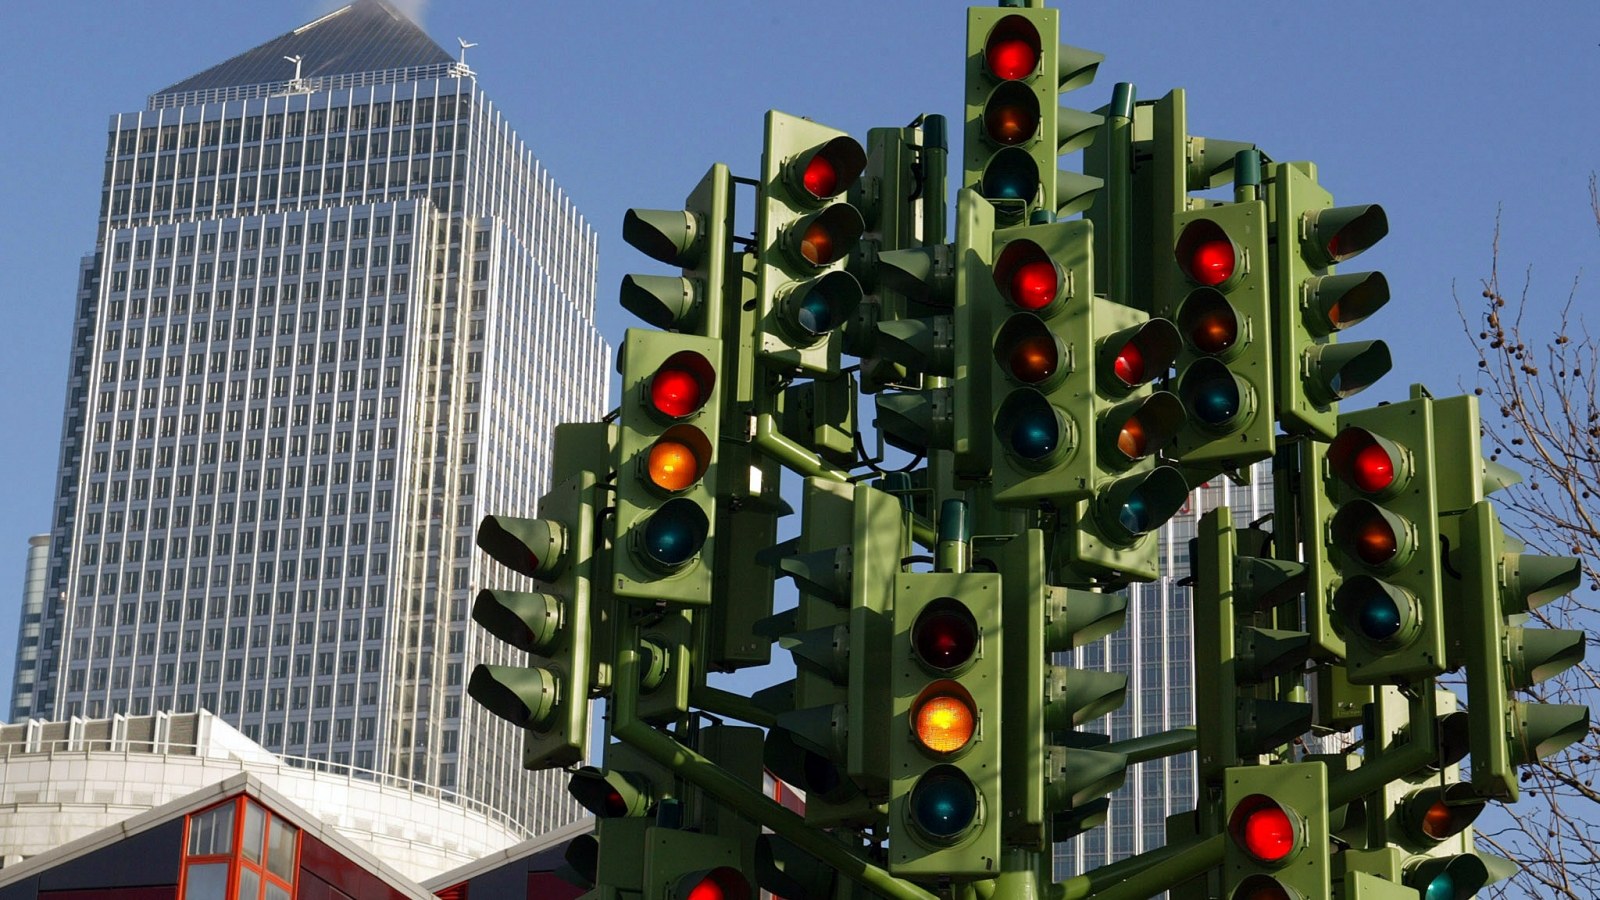 Đèn giao thông sẽ có 4 màu trắng, xanh, vàng đỏ trong tương lai?